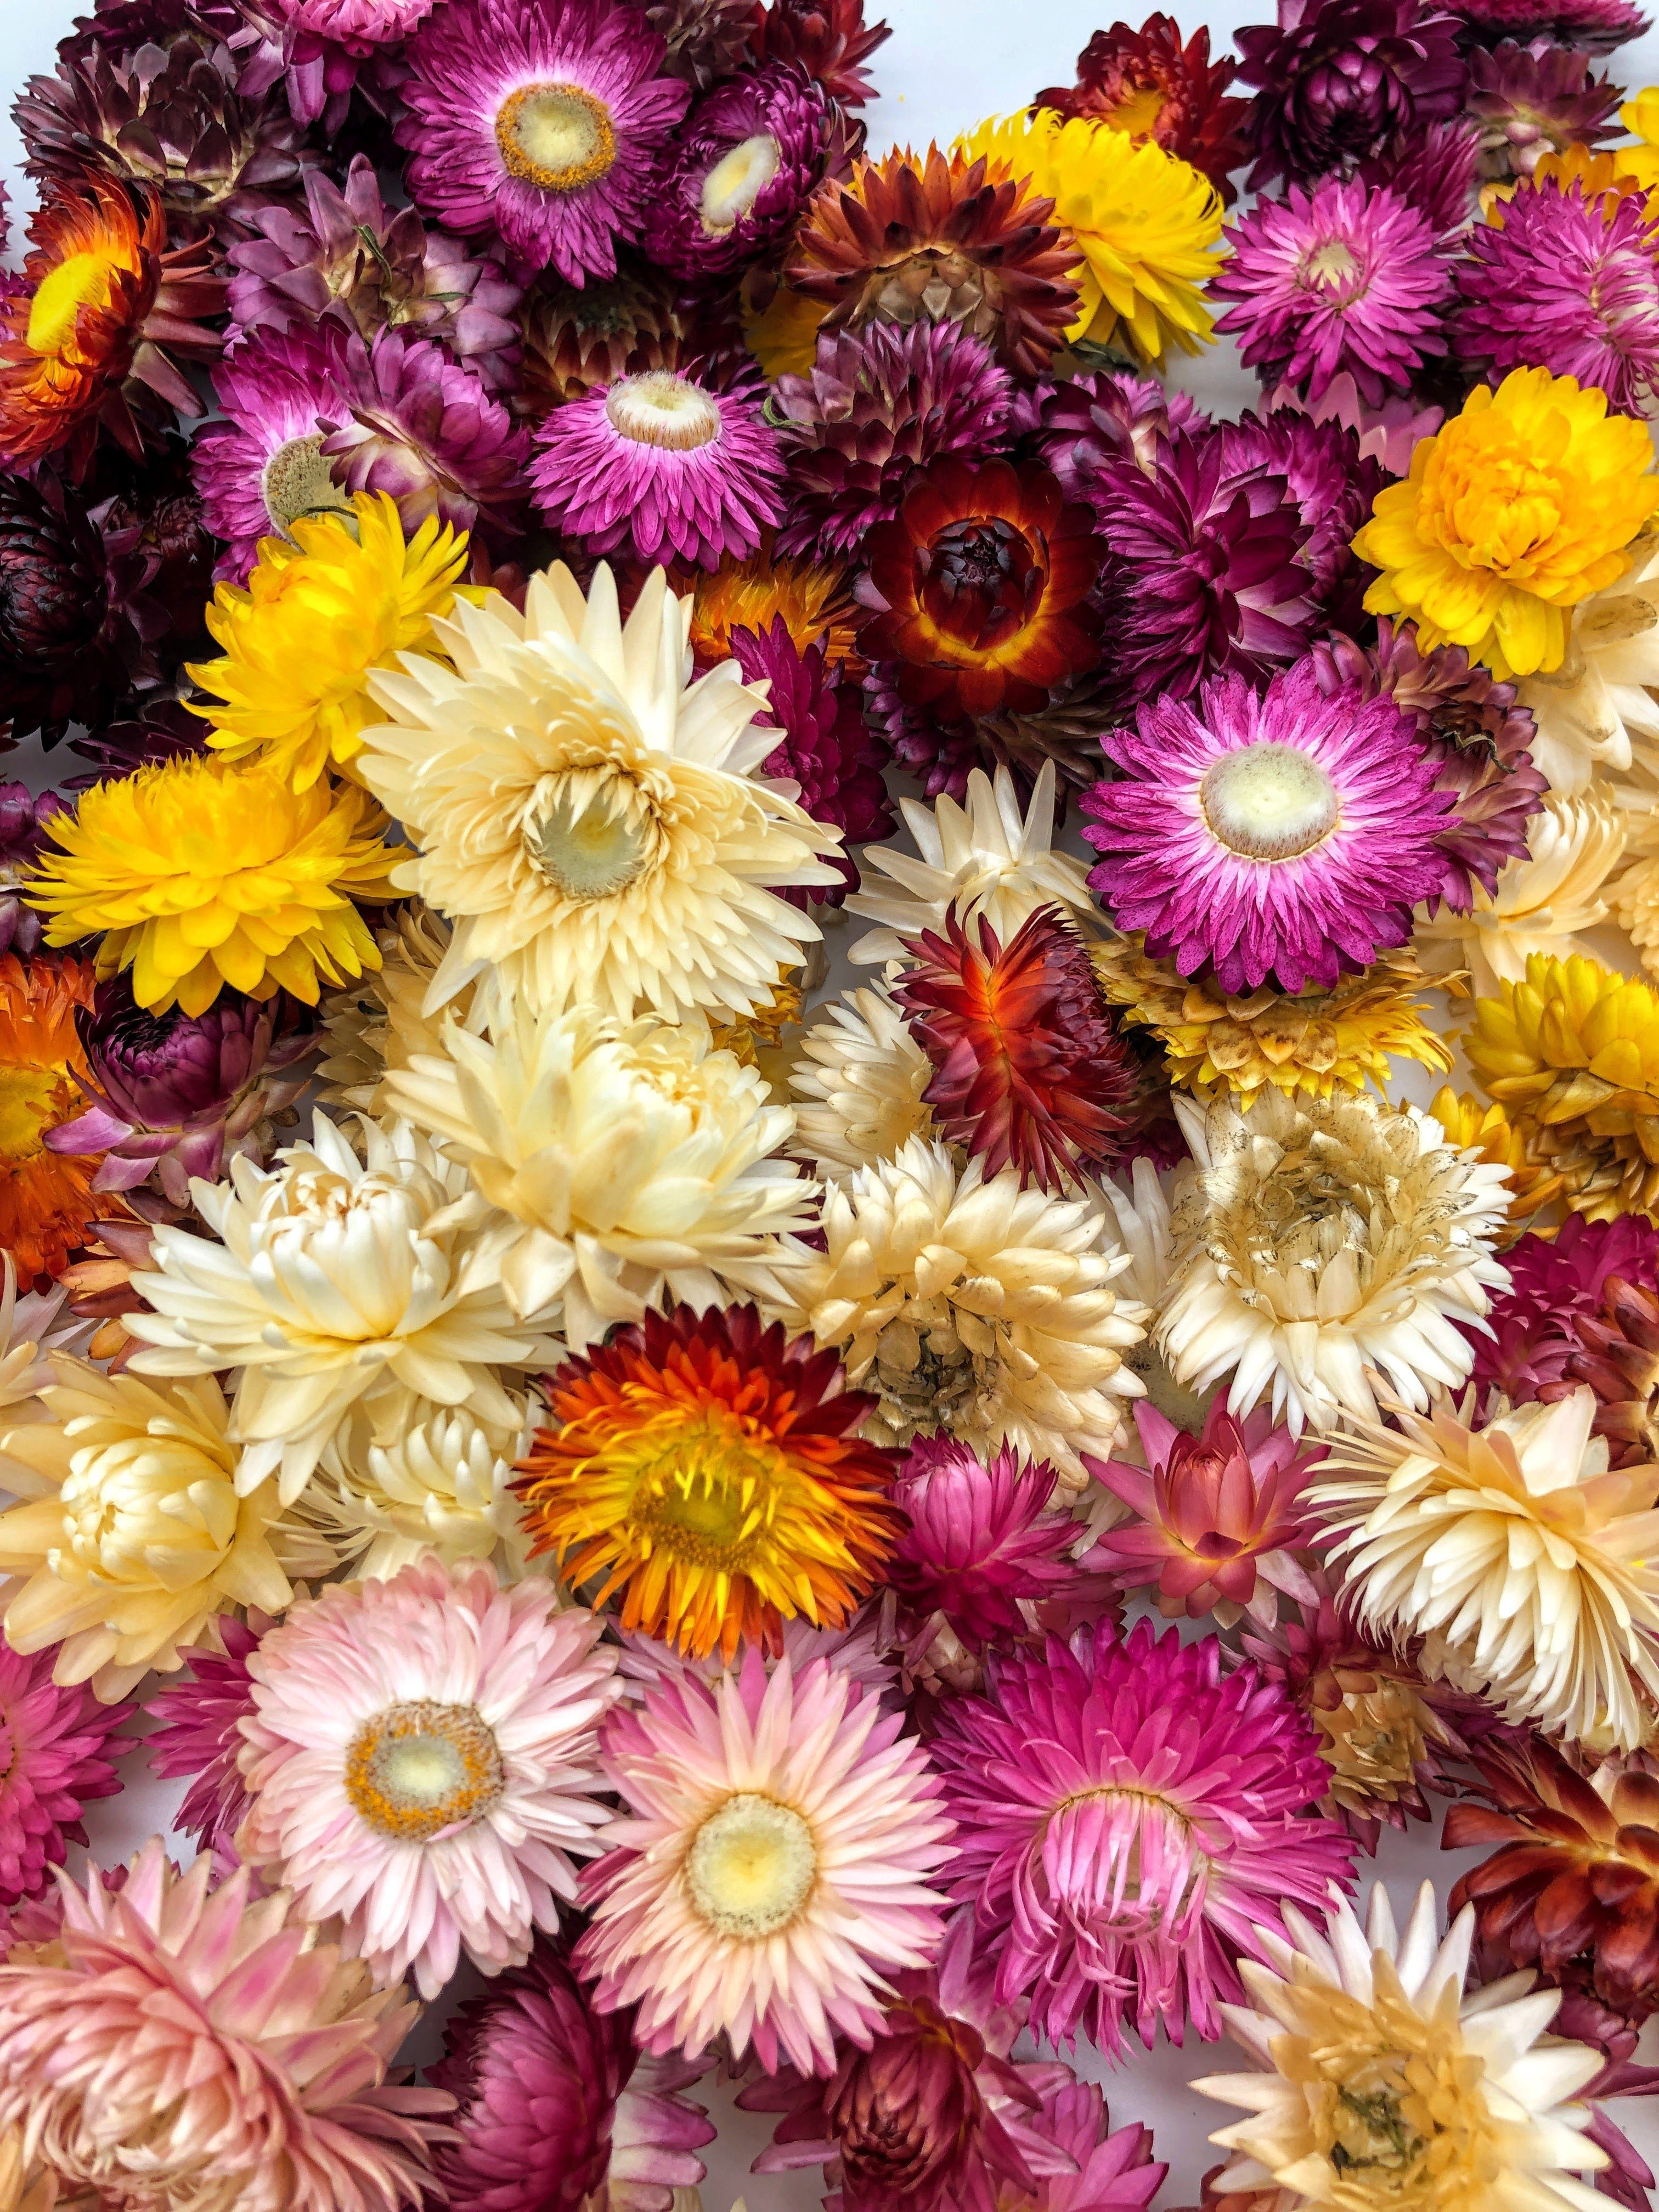 Trockenblume Strohblumenköpfe Helichrysum oder gemischt Kunstharz.Art farblich sortiert - Weiß, getrocknet